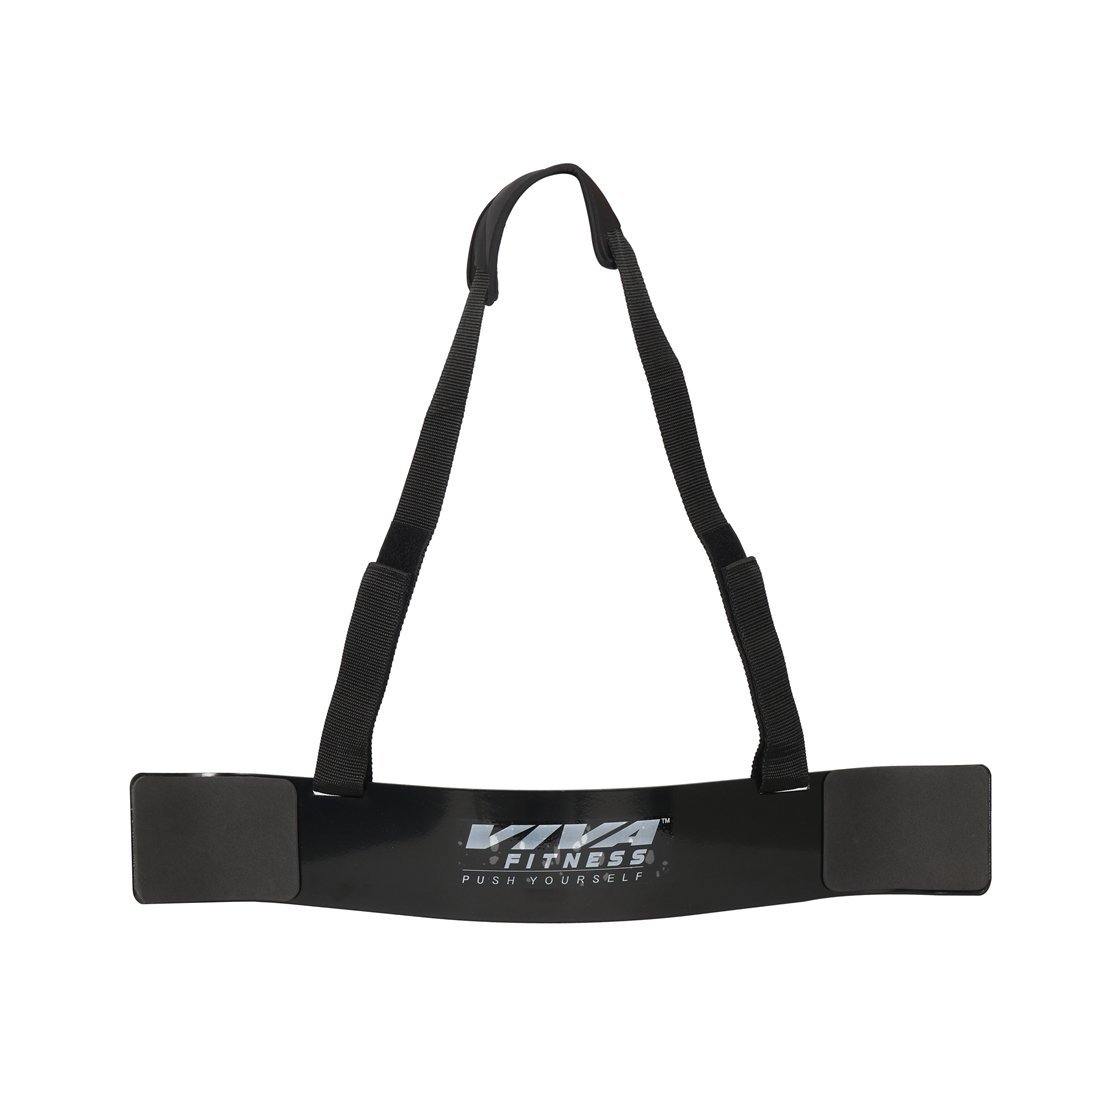 Viva Fitness Exercise Arm Blaster (Black) - Best Price online Prokicksports.com